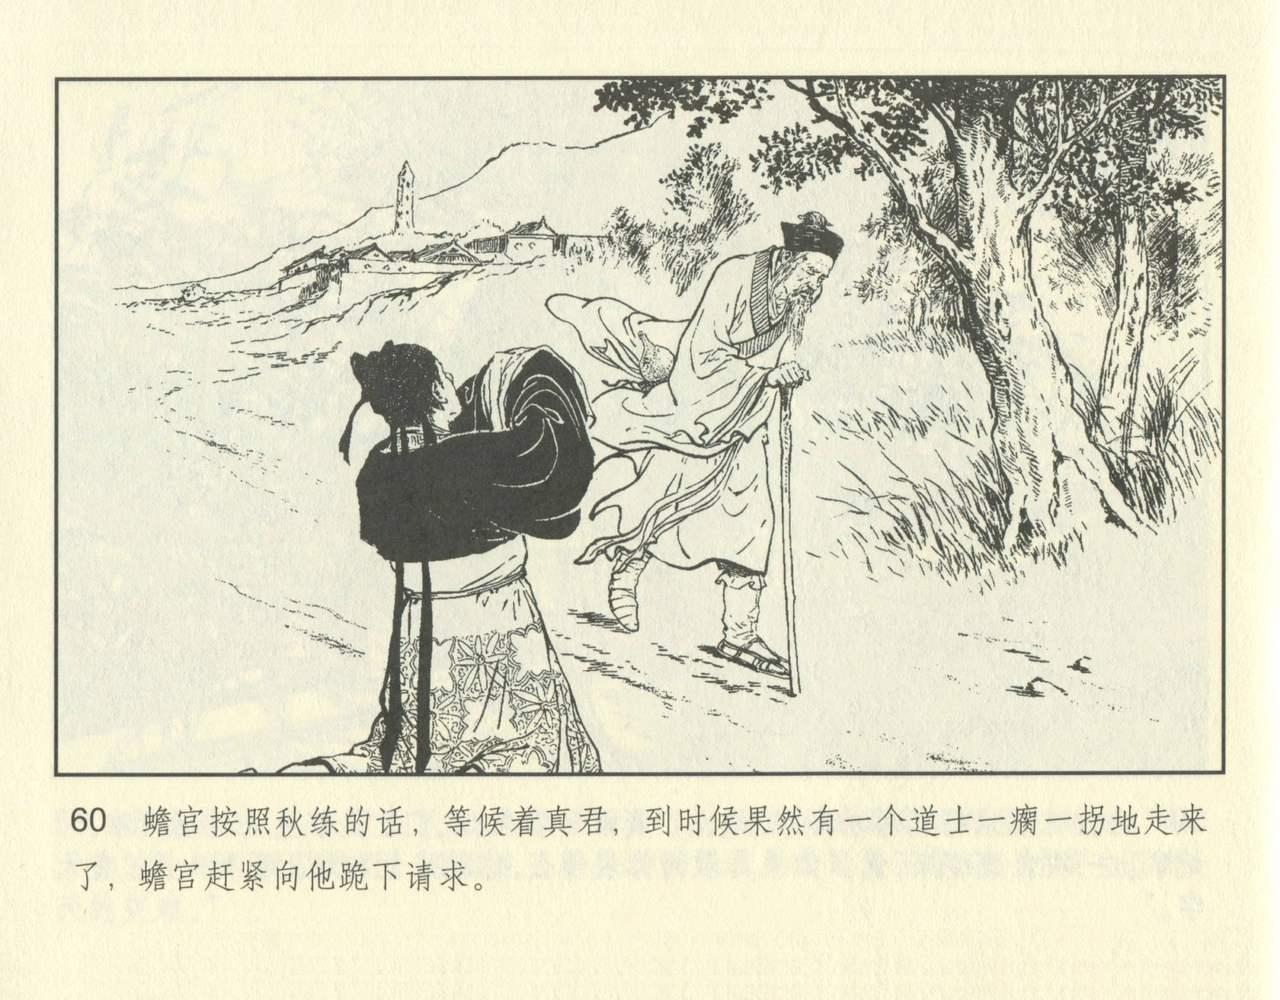 聊斋志异 张玮等绘 天津人民美术出版社 卷二十一 ~ 三十 109